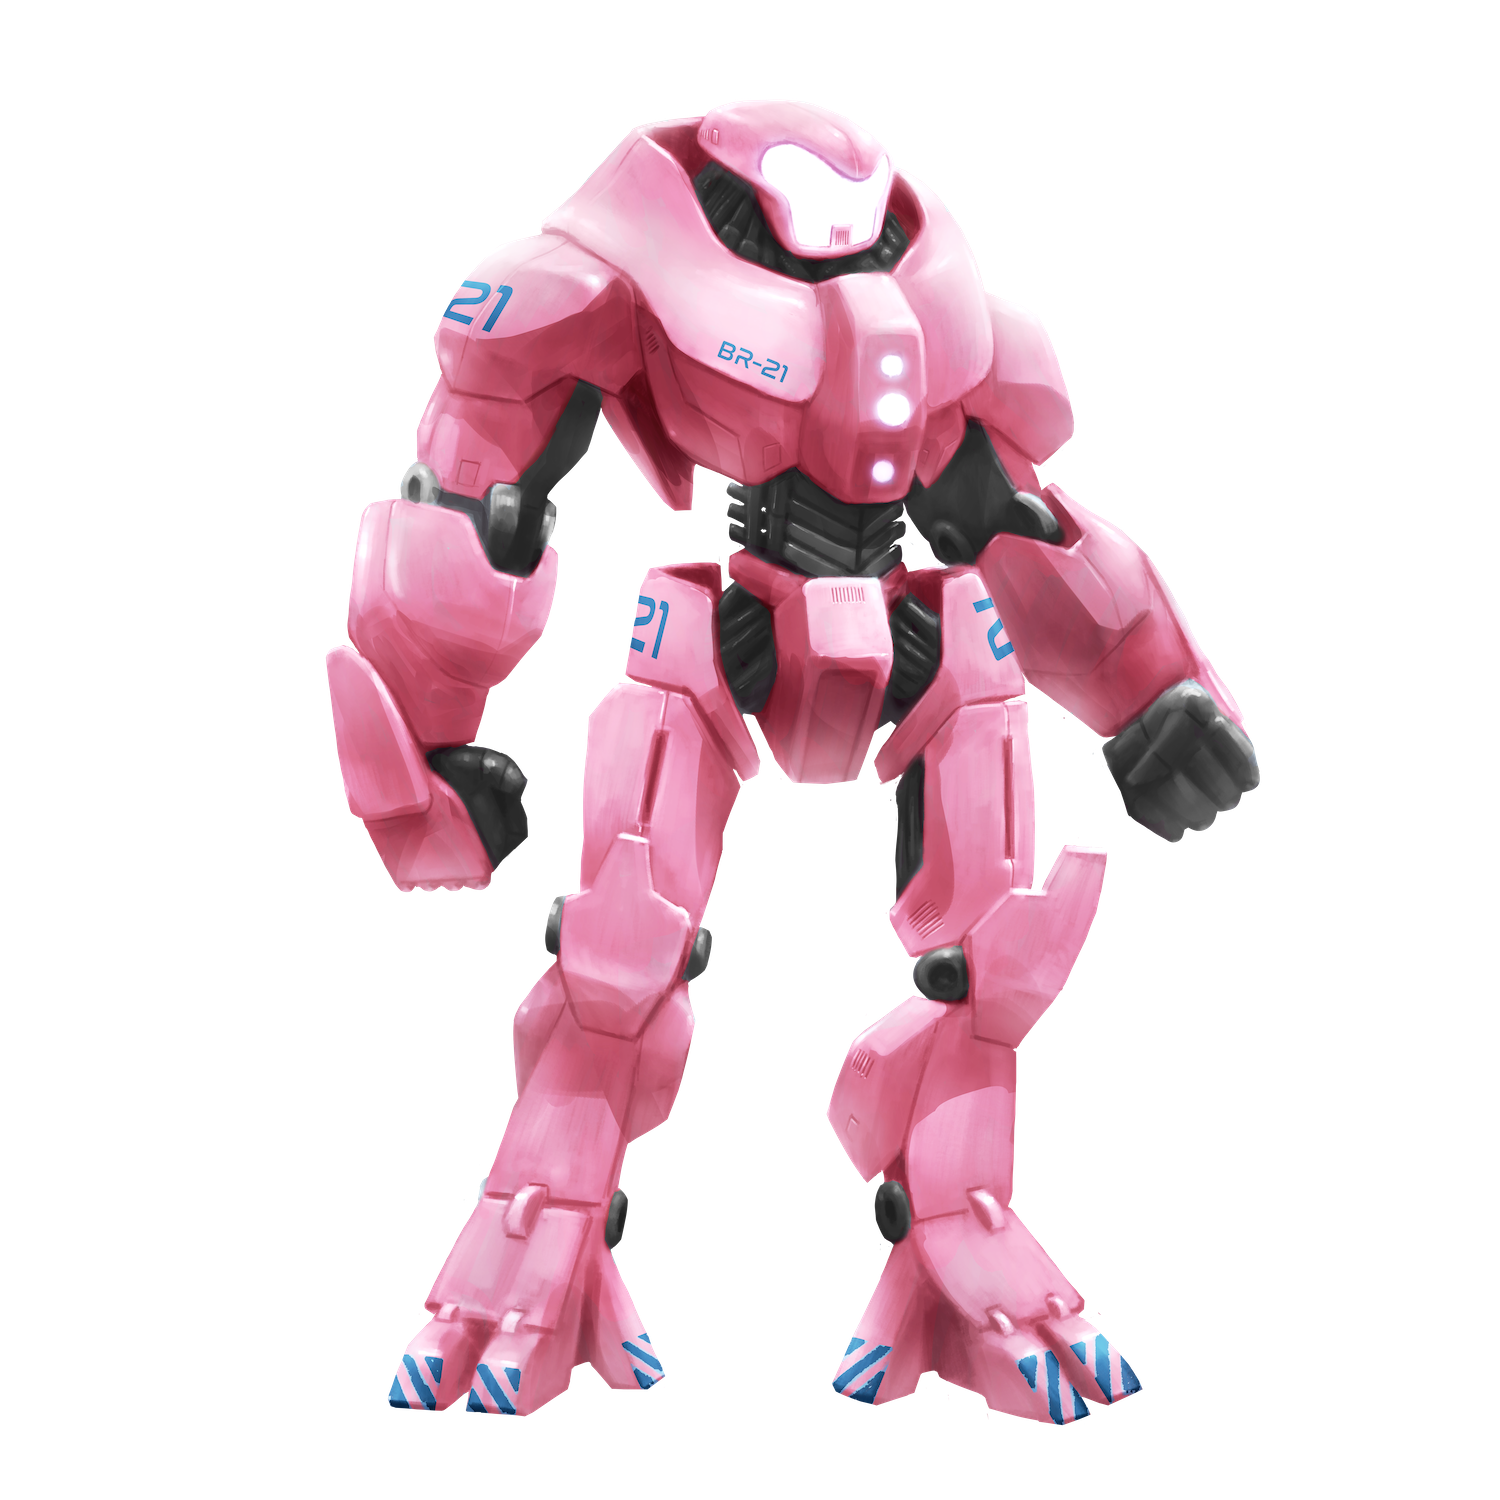 Robotron Rosa